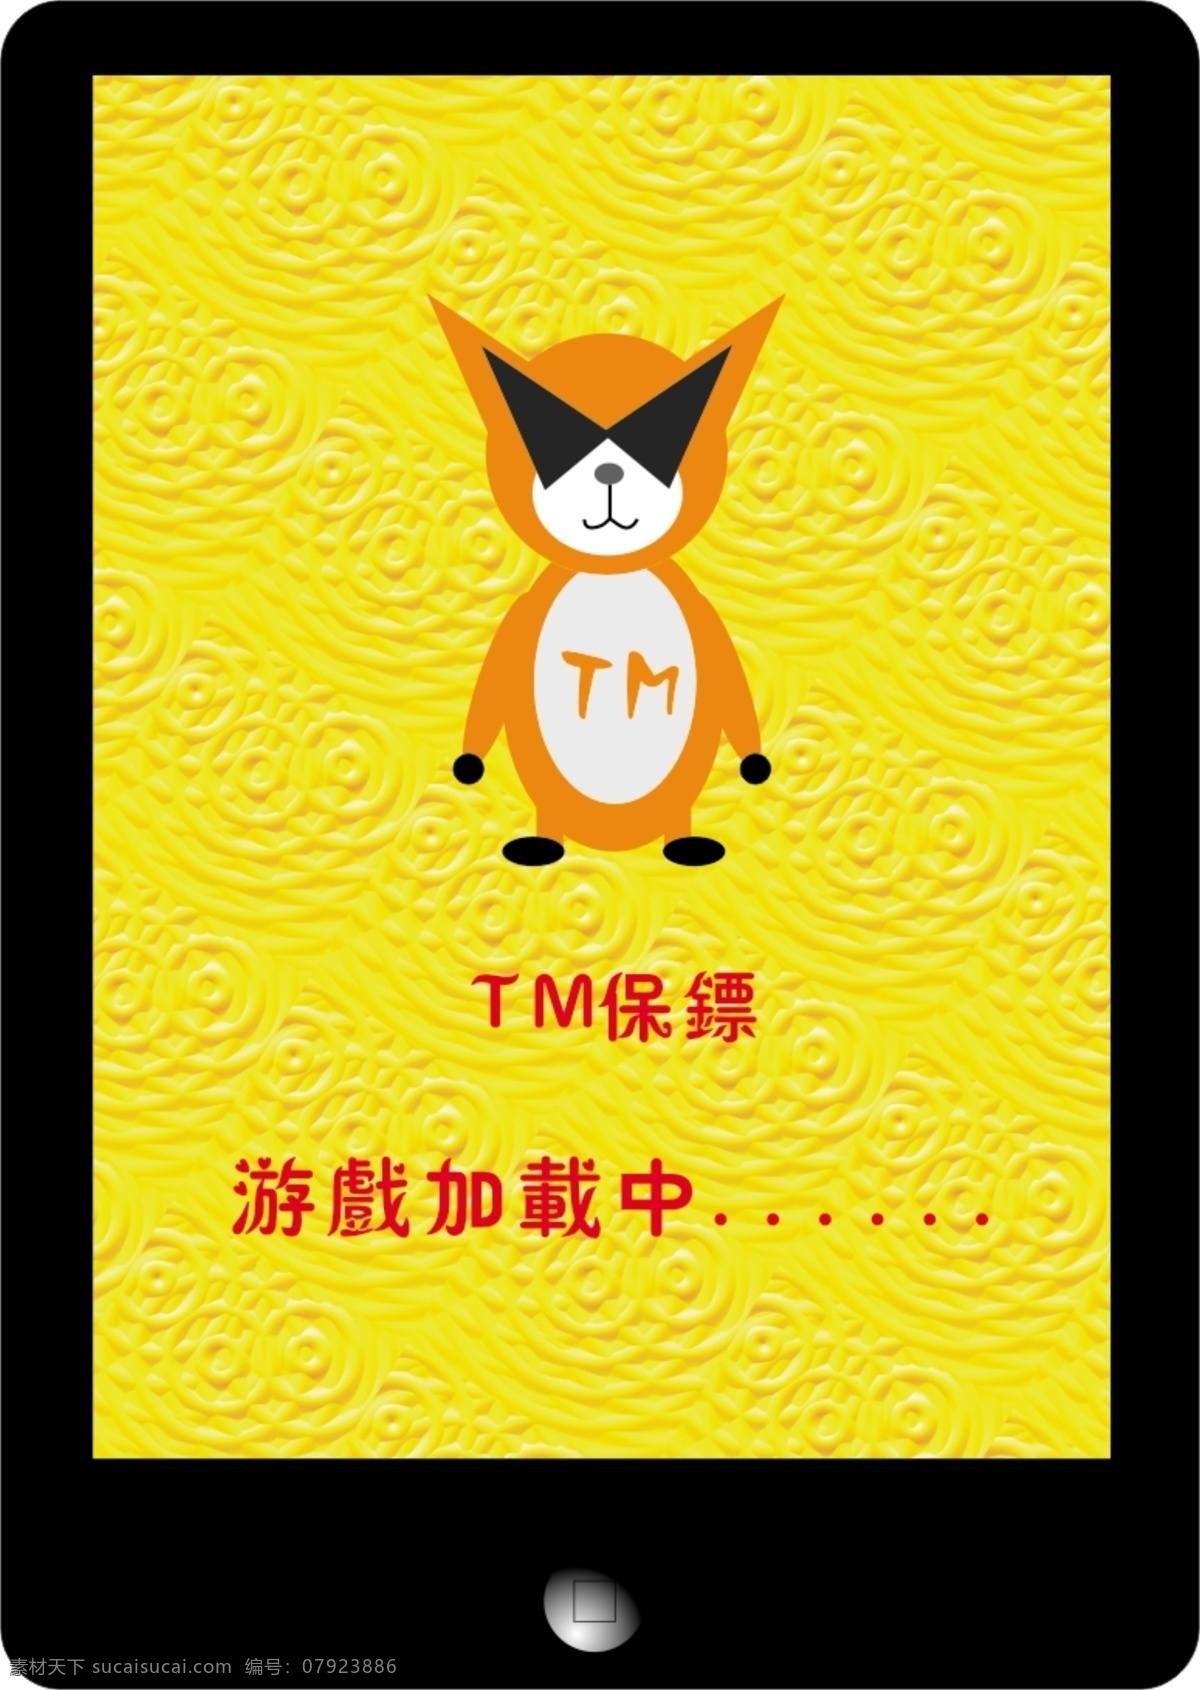 黑色 金色壁纸 网页模板 游戏界面 源文件 中文模板 模板下载 tm tm猫 游戏加载中 tm保镖 网页素材